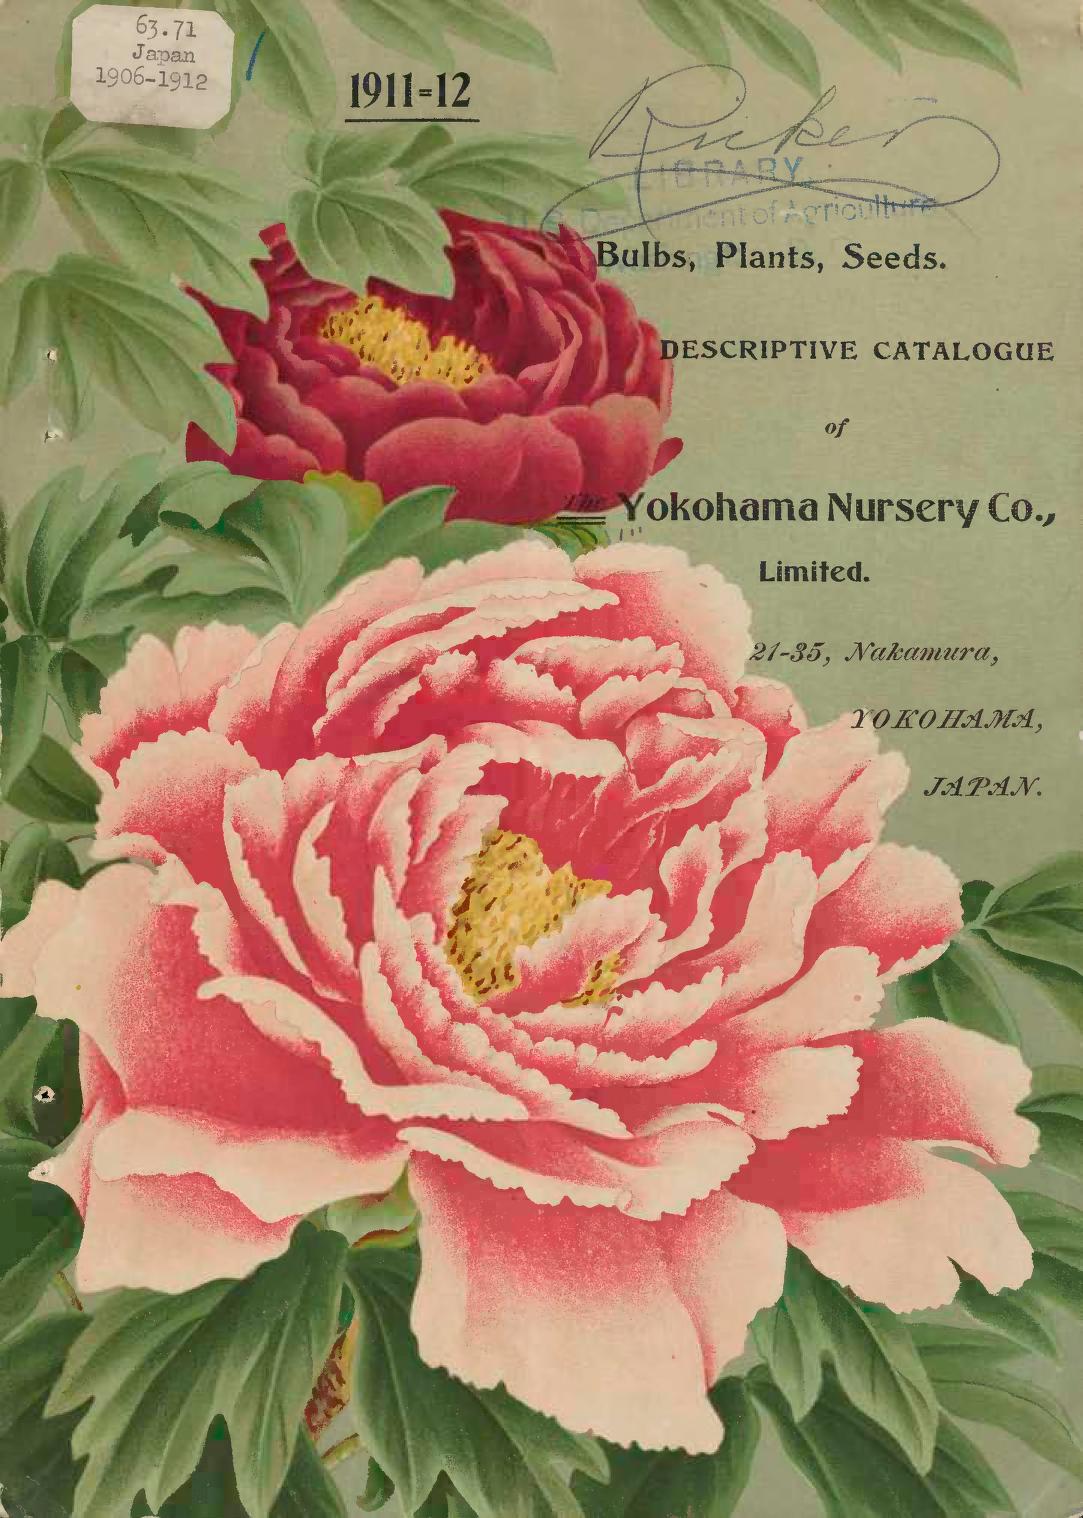 Yokohama Nursery Catalogs New York Botanical Garden